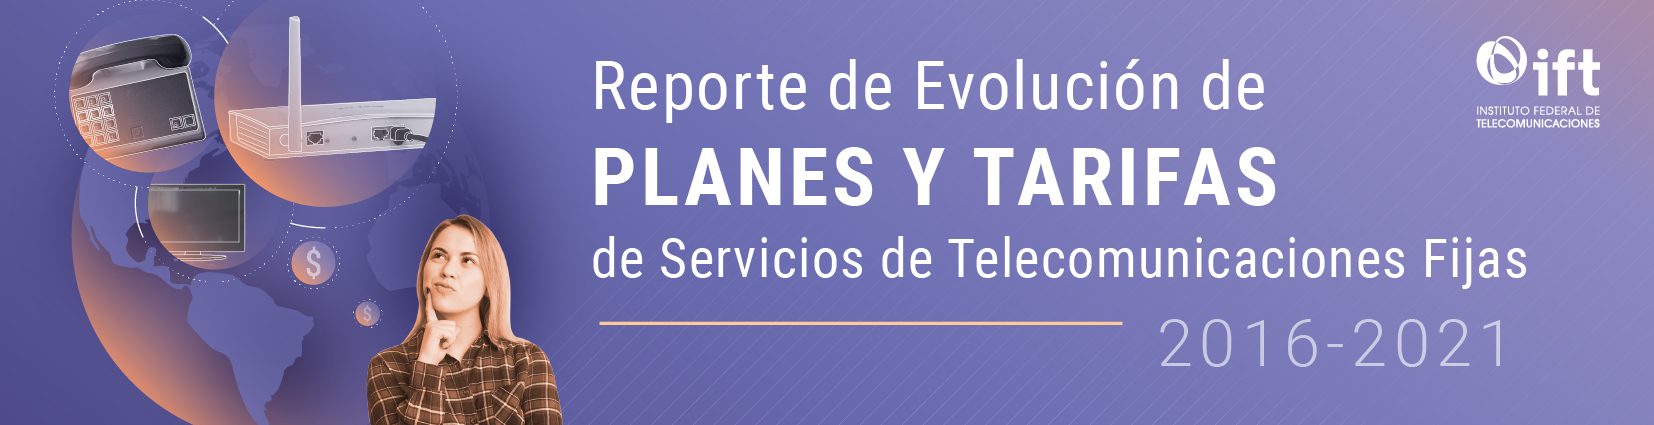 Reporte de Evolución de Planes y Tarifas de Servicios de Telecomunicaciones Fijas, 2016-2021